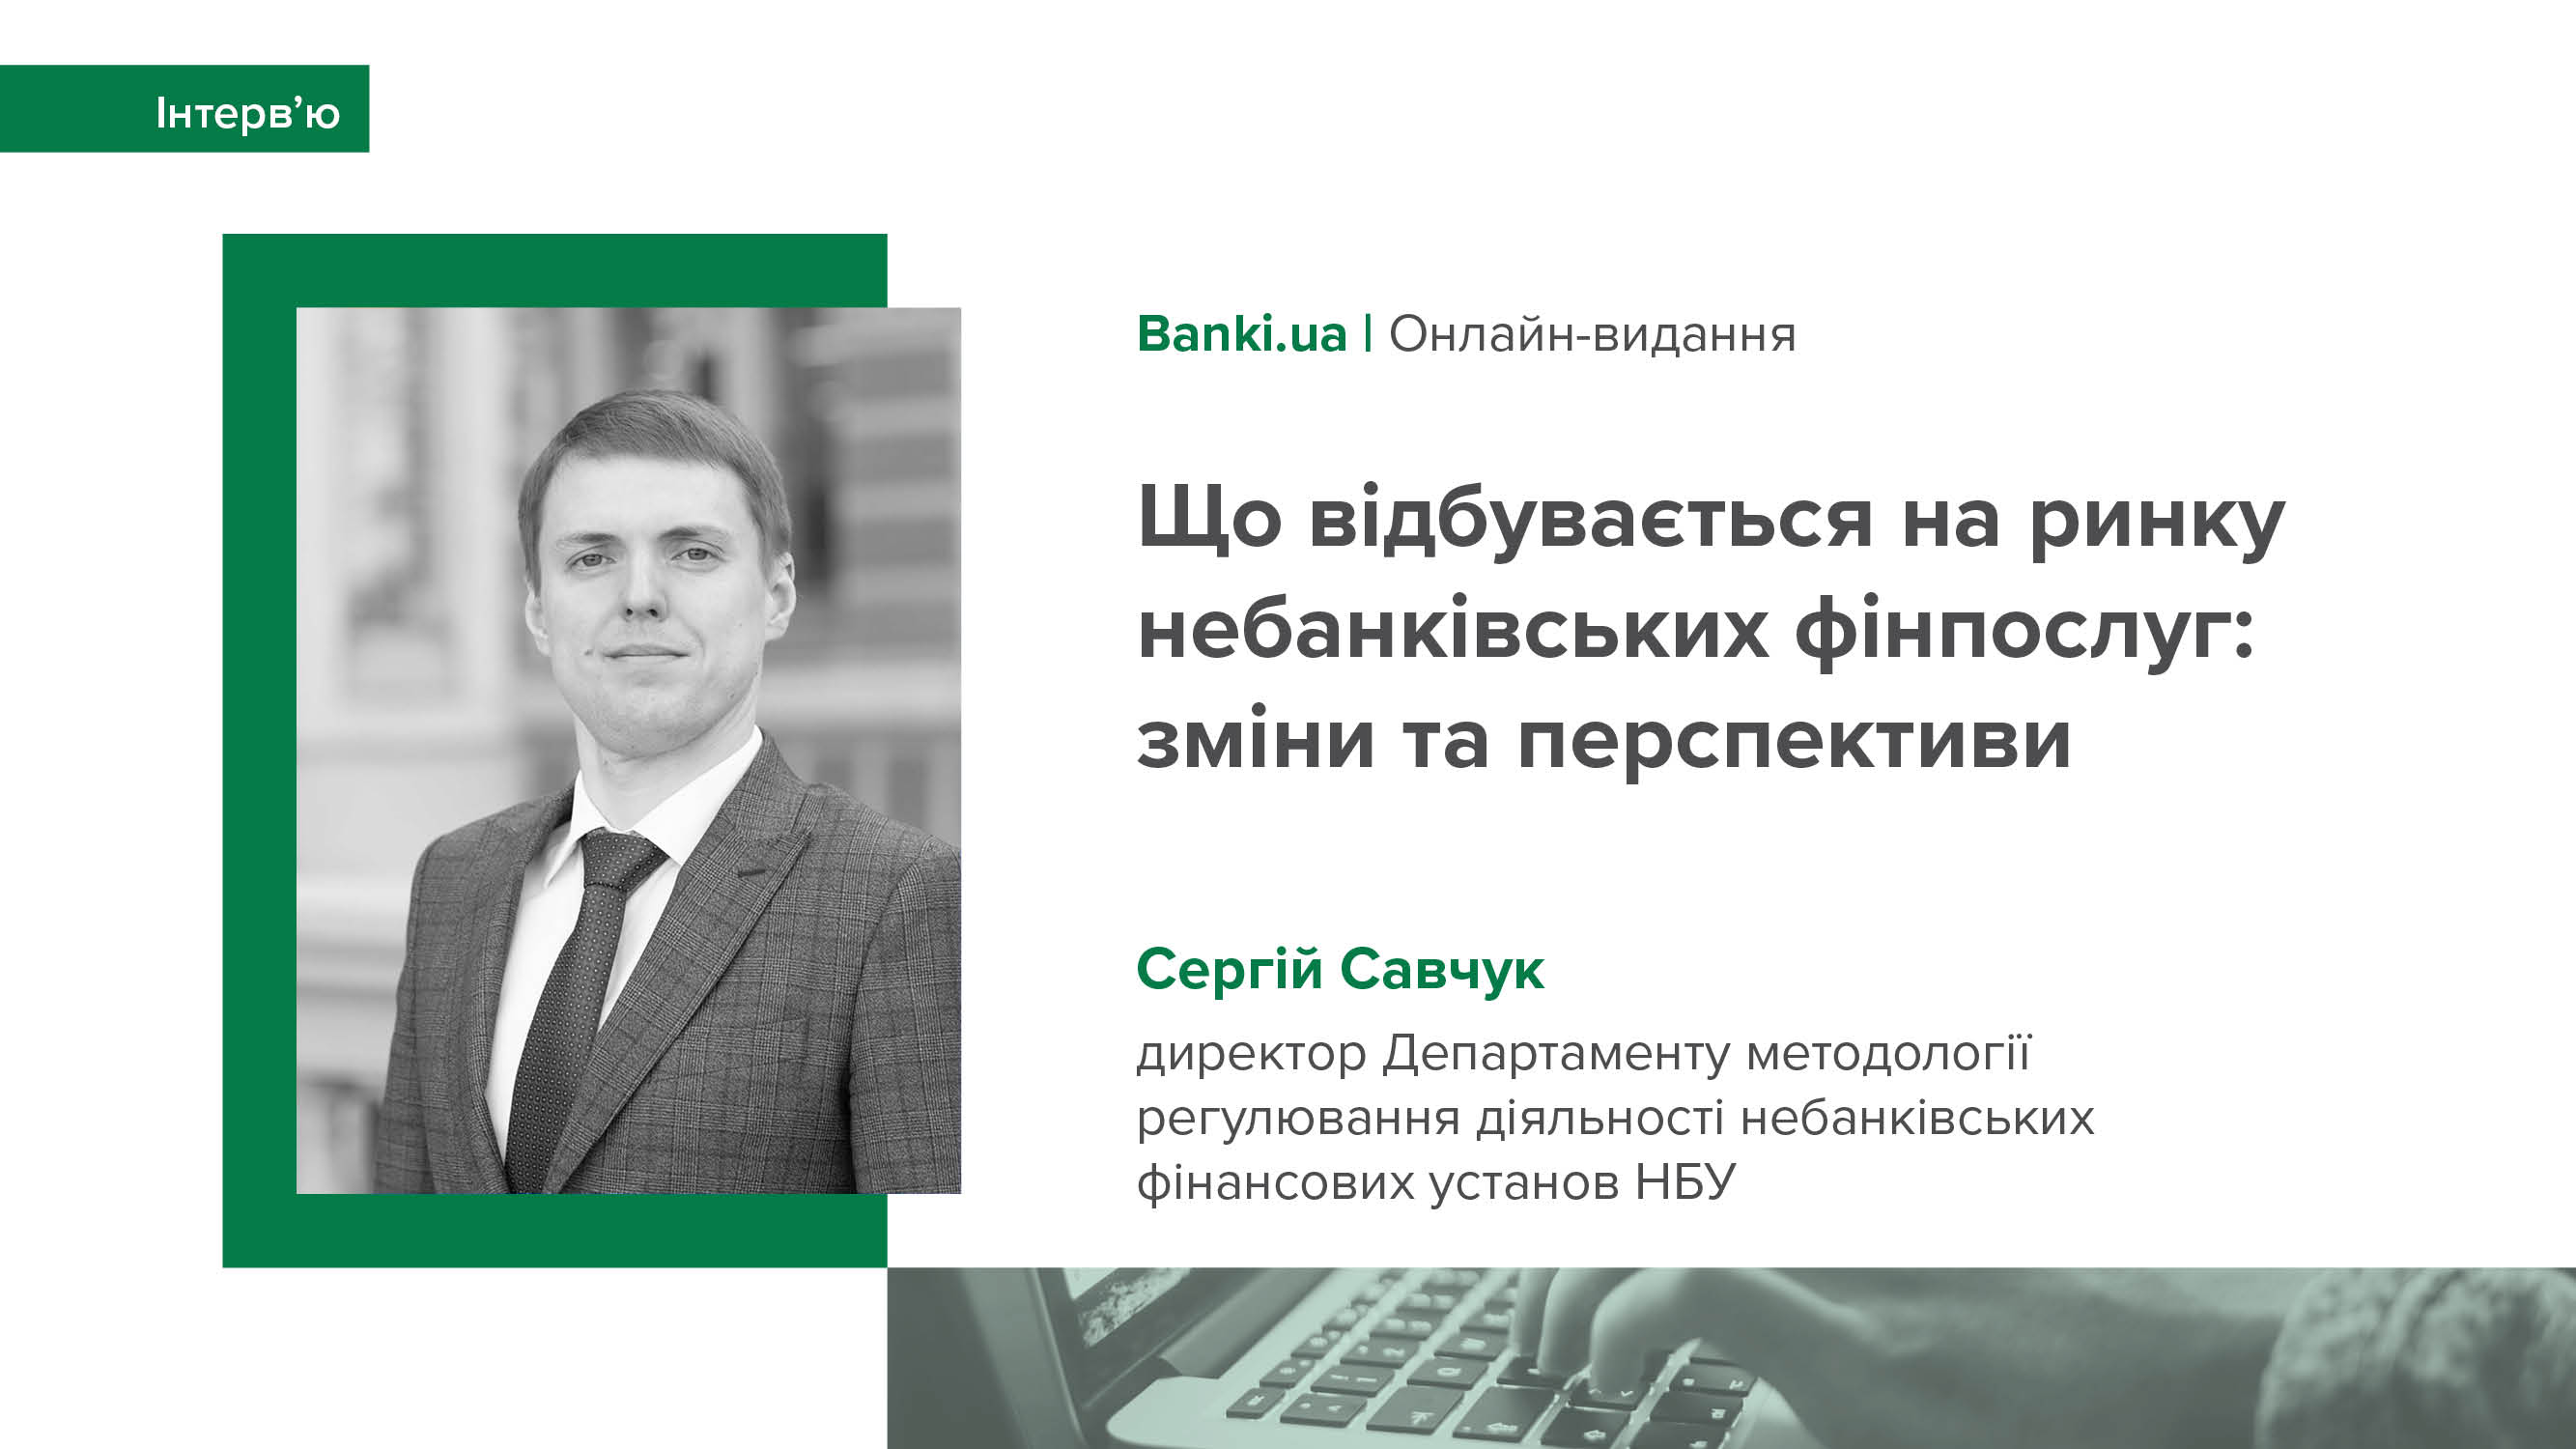 Інтерв’ю Сергія Савчука для Banki.ua про стан та перспективи небанківського фінансового ринку